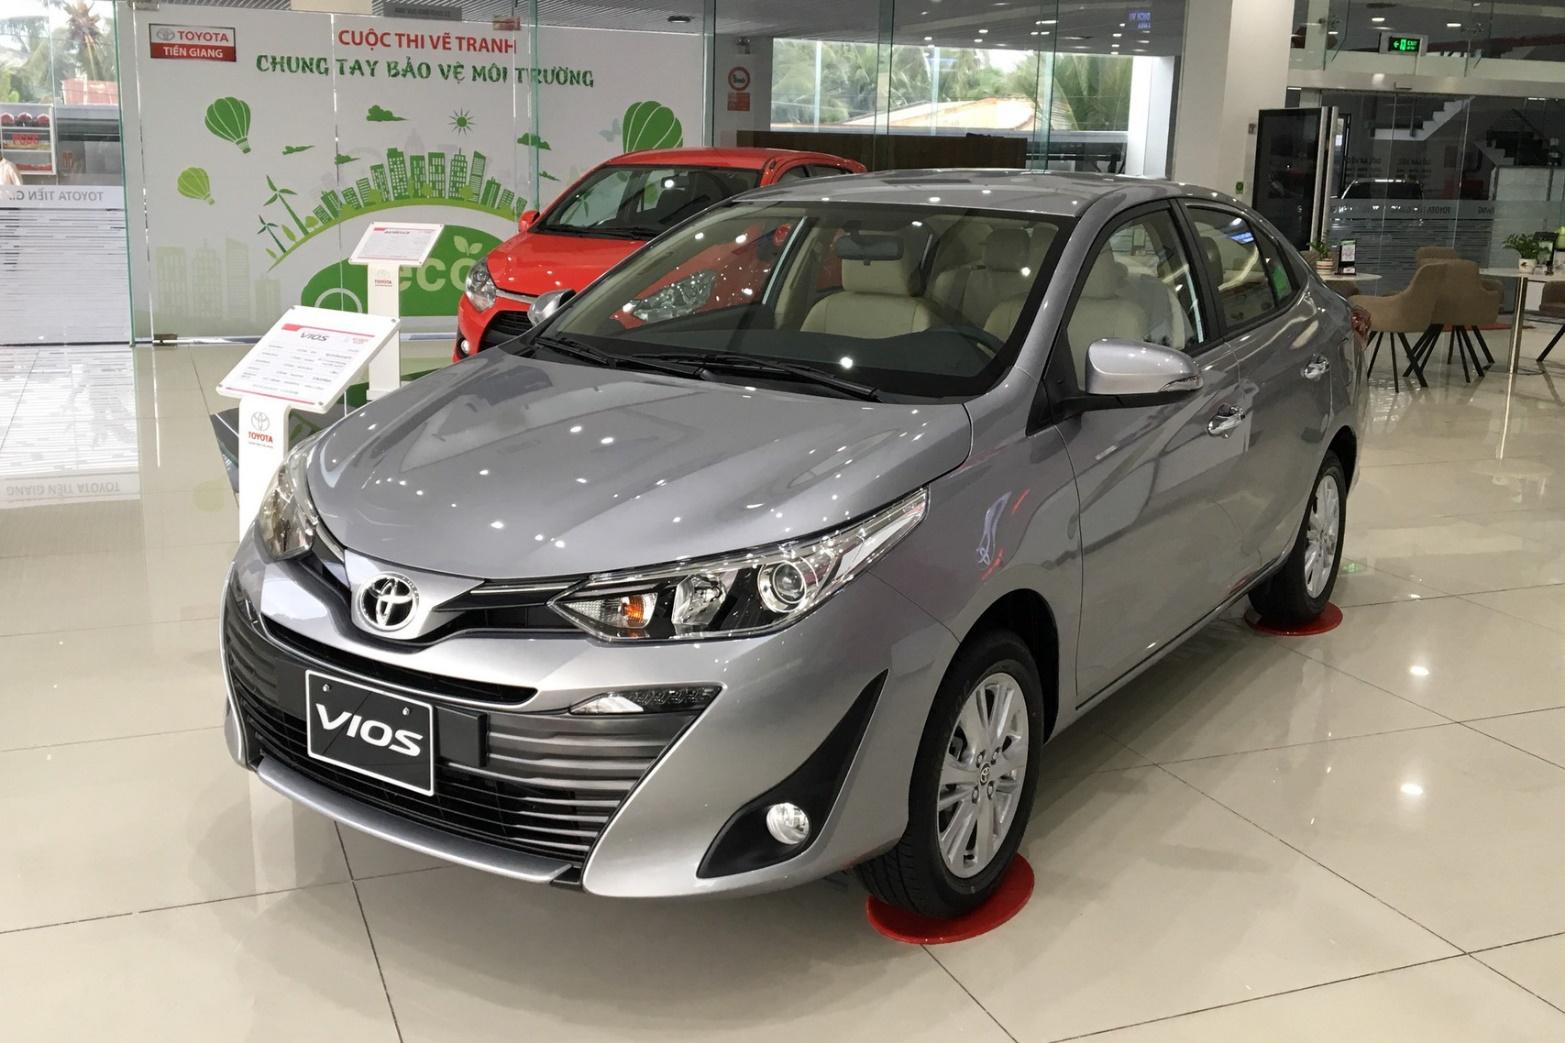 Nên chọn đời nào khi mua Toyota Vios cũ để sử dụng cho gia đình? | Khoa Học  - Công nghệ